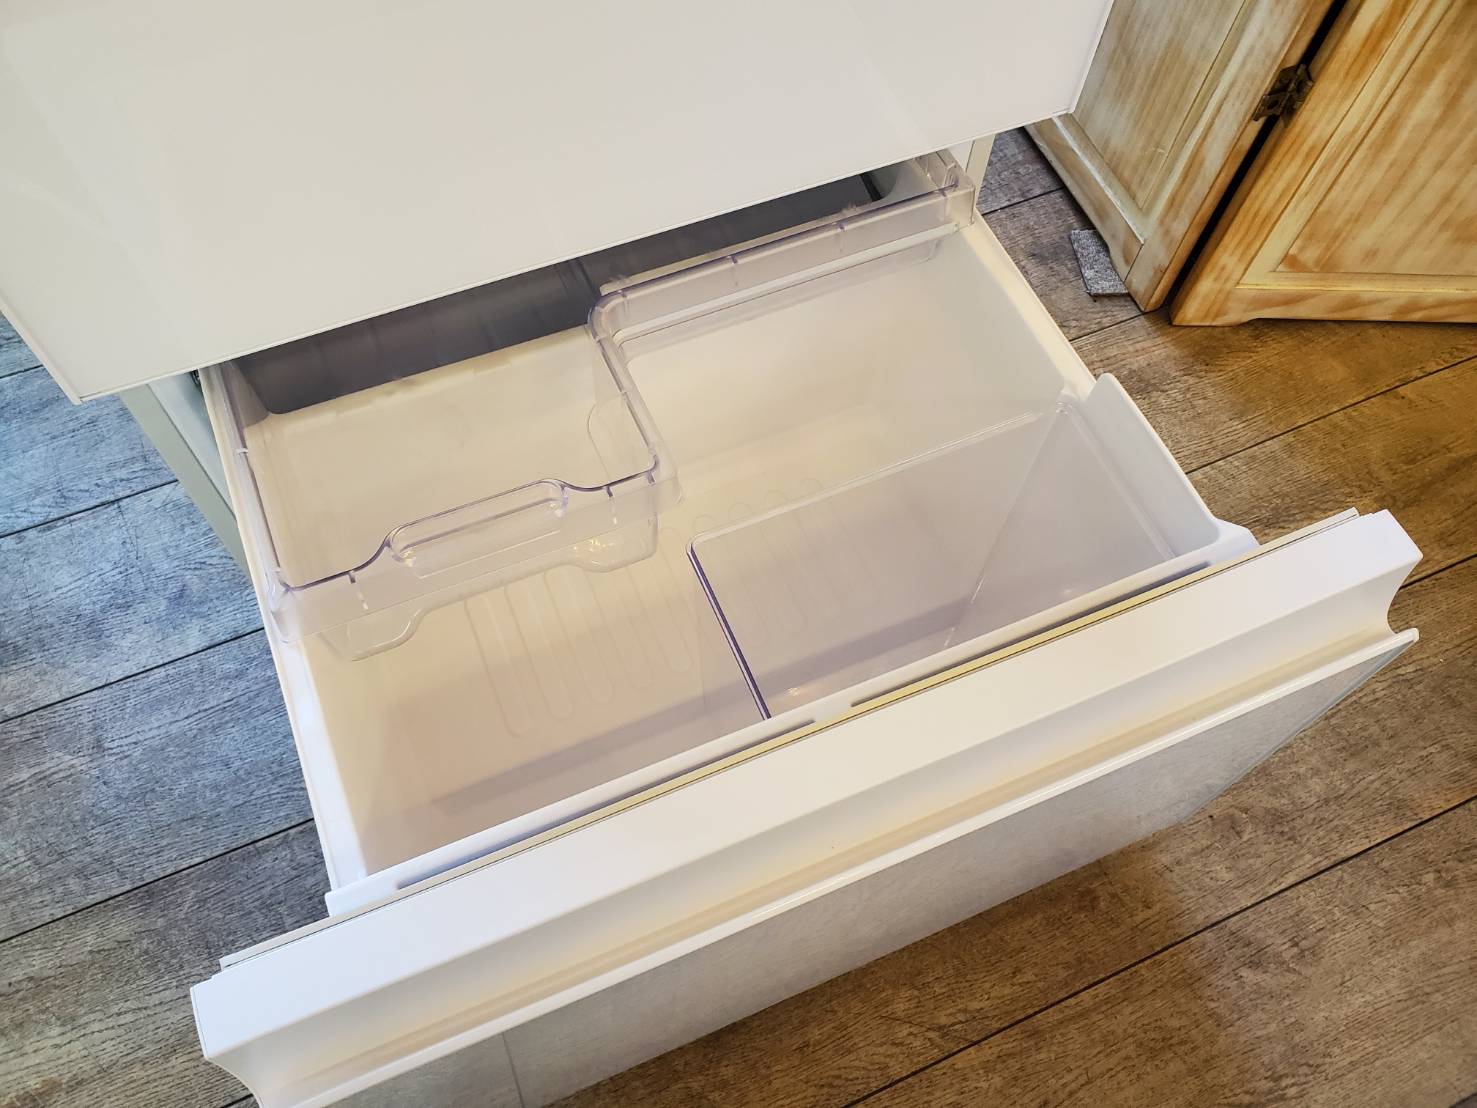 ☆SHARP シャープ 356L 3ドア 冷蔵庫 2019年製 高年式 冷凍冷蔵庫 買取しました☆ | 愛知と岐阜のリサイクルショップ 再良市場